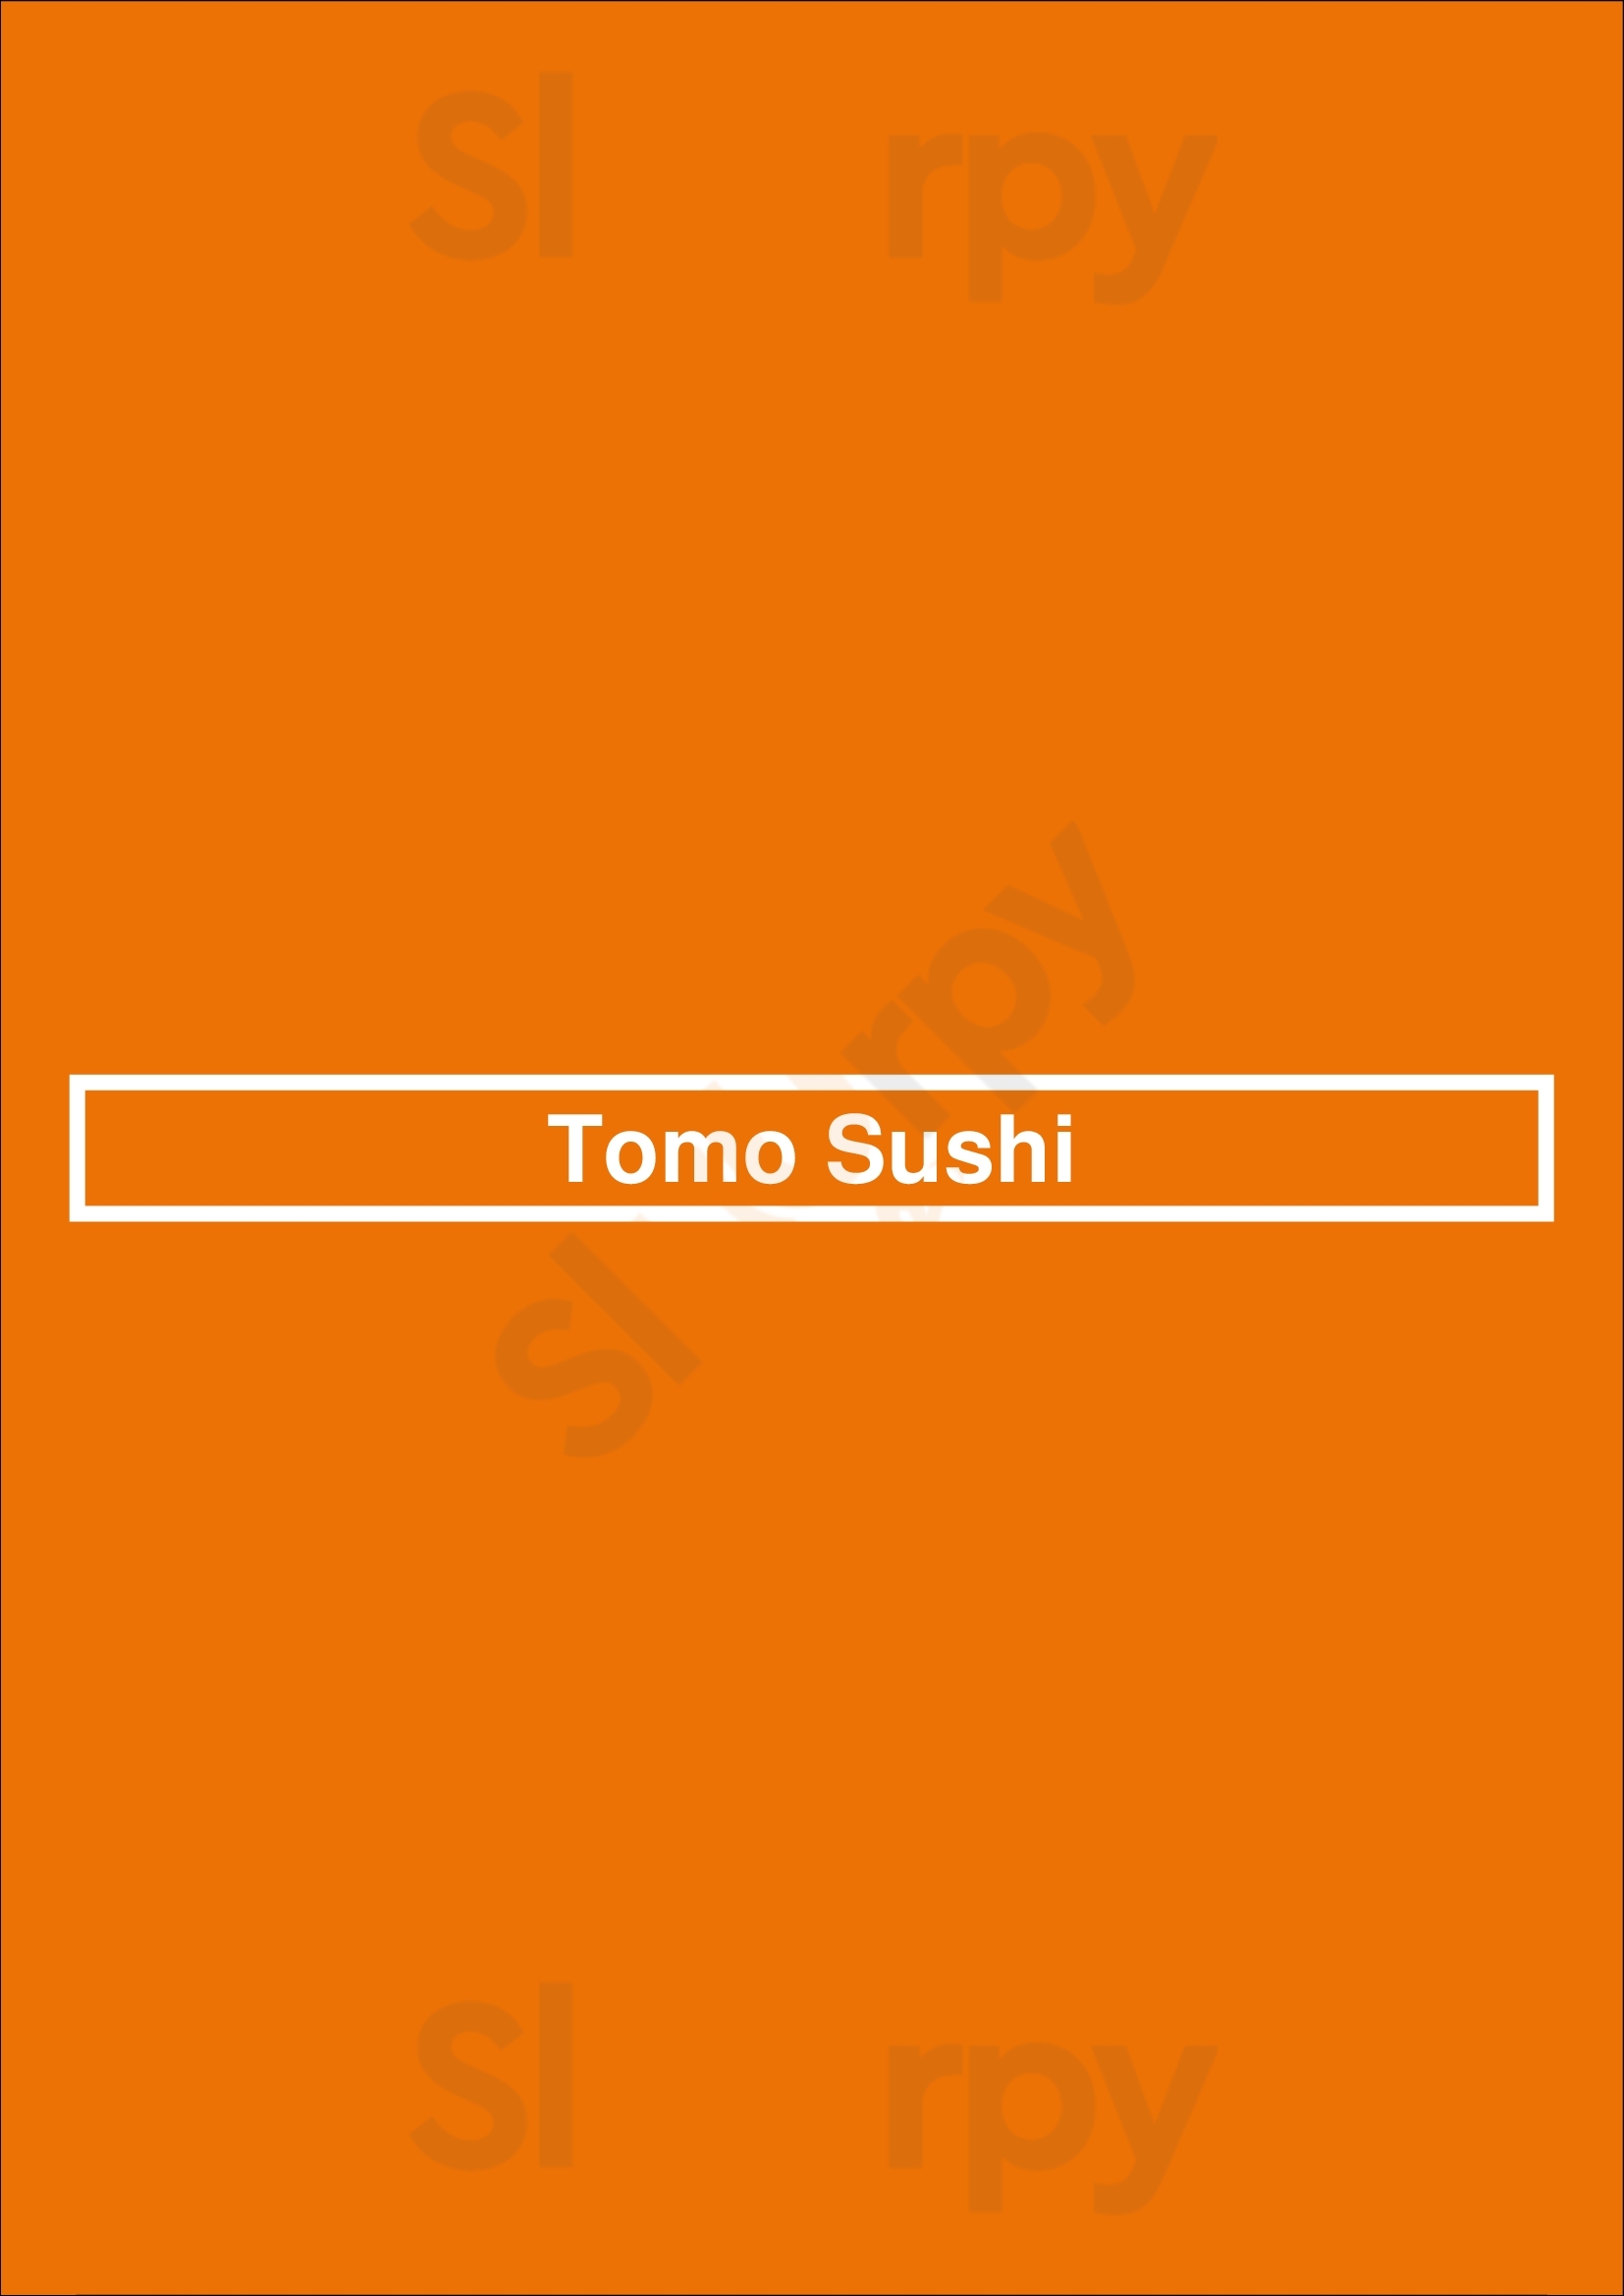 Tomo Sushi Amsterdam Menu - 1